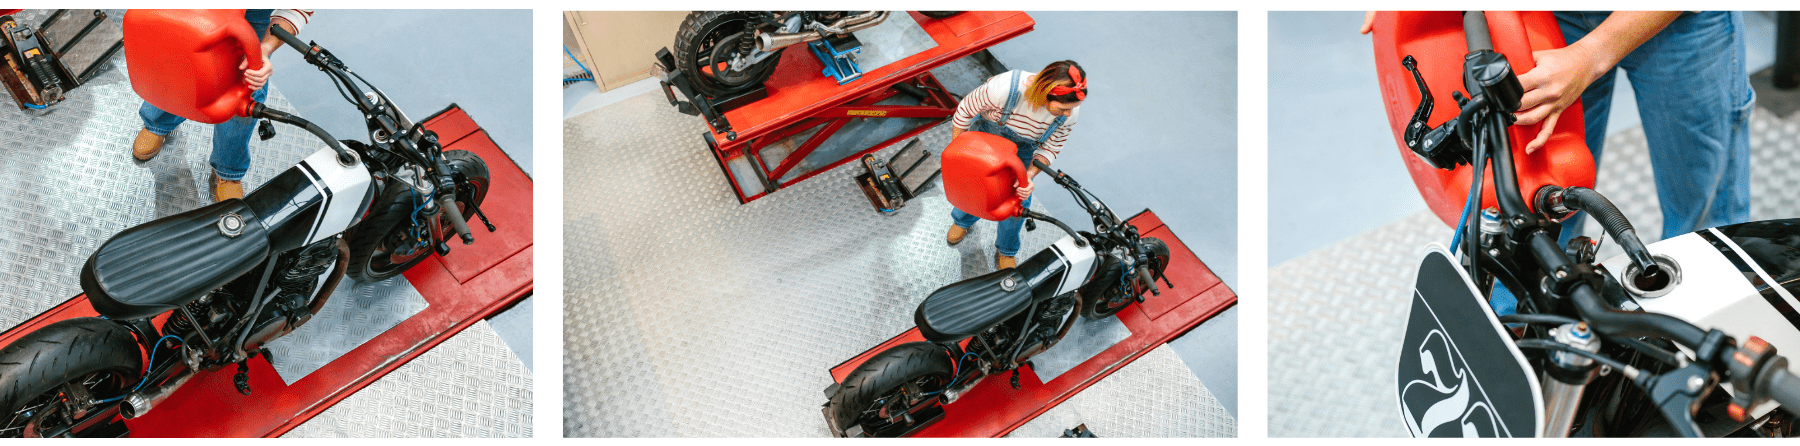 אוסף של שלוש תמונות של אישה מכונאית במוסך, האישה אוחזת מיכל דלק / ג'ריקן בצבע אדום ומתדלקת איתו אופנוע